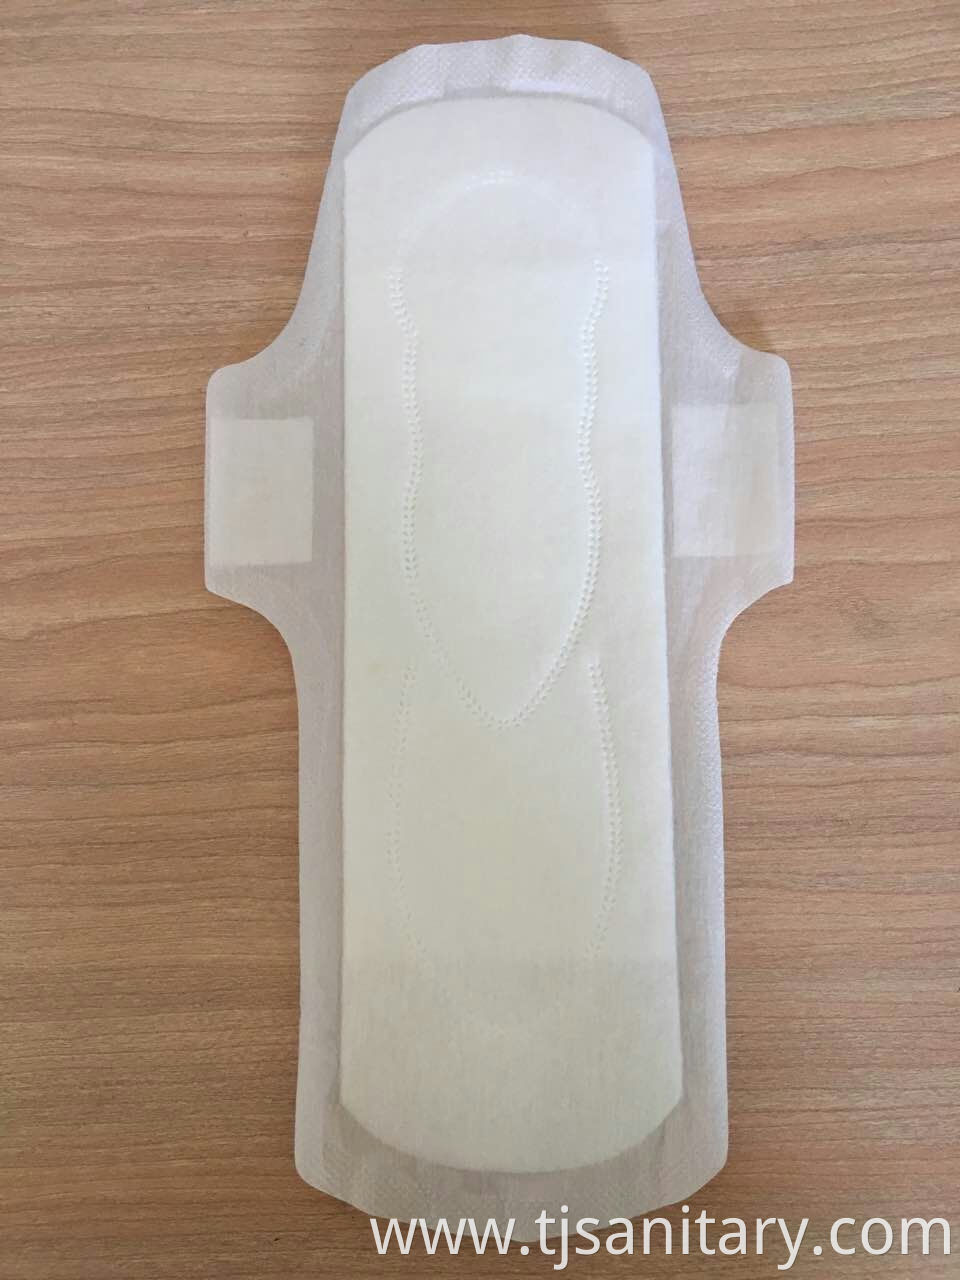 fiber sanitary napkinn